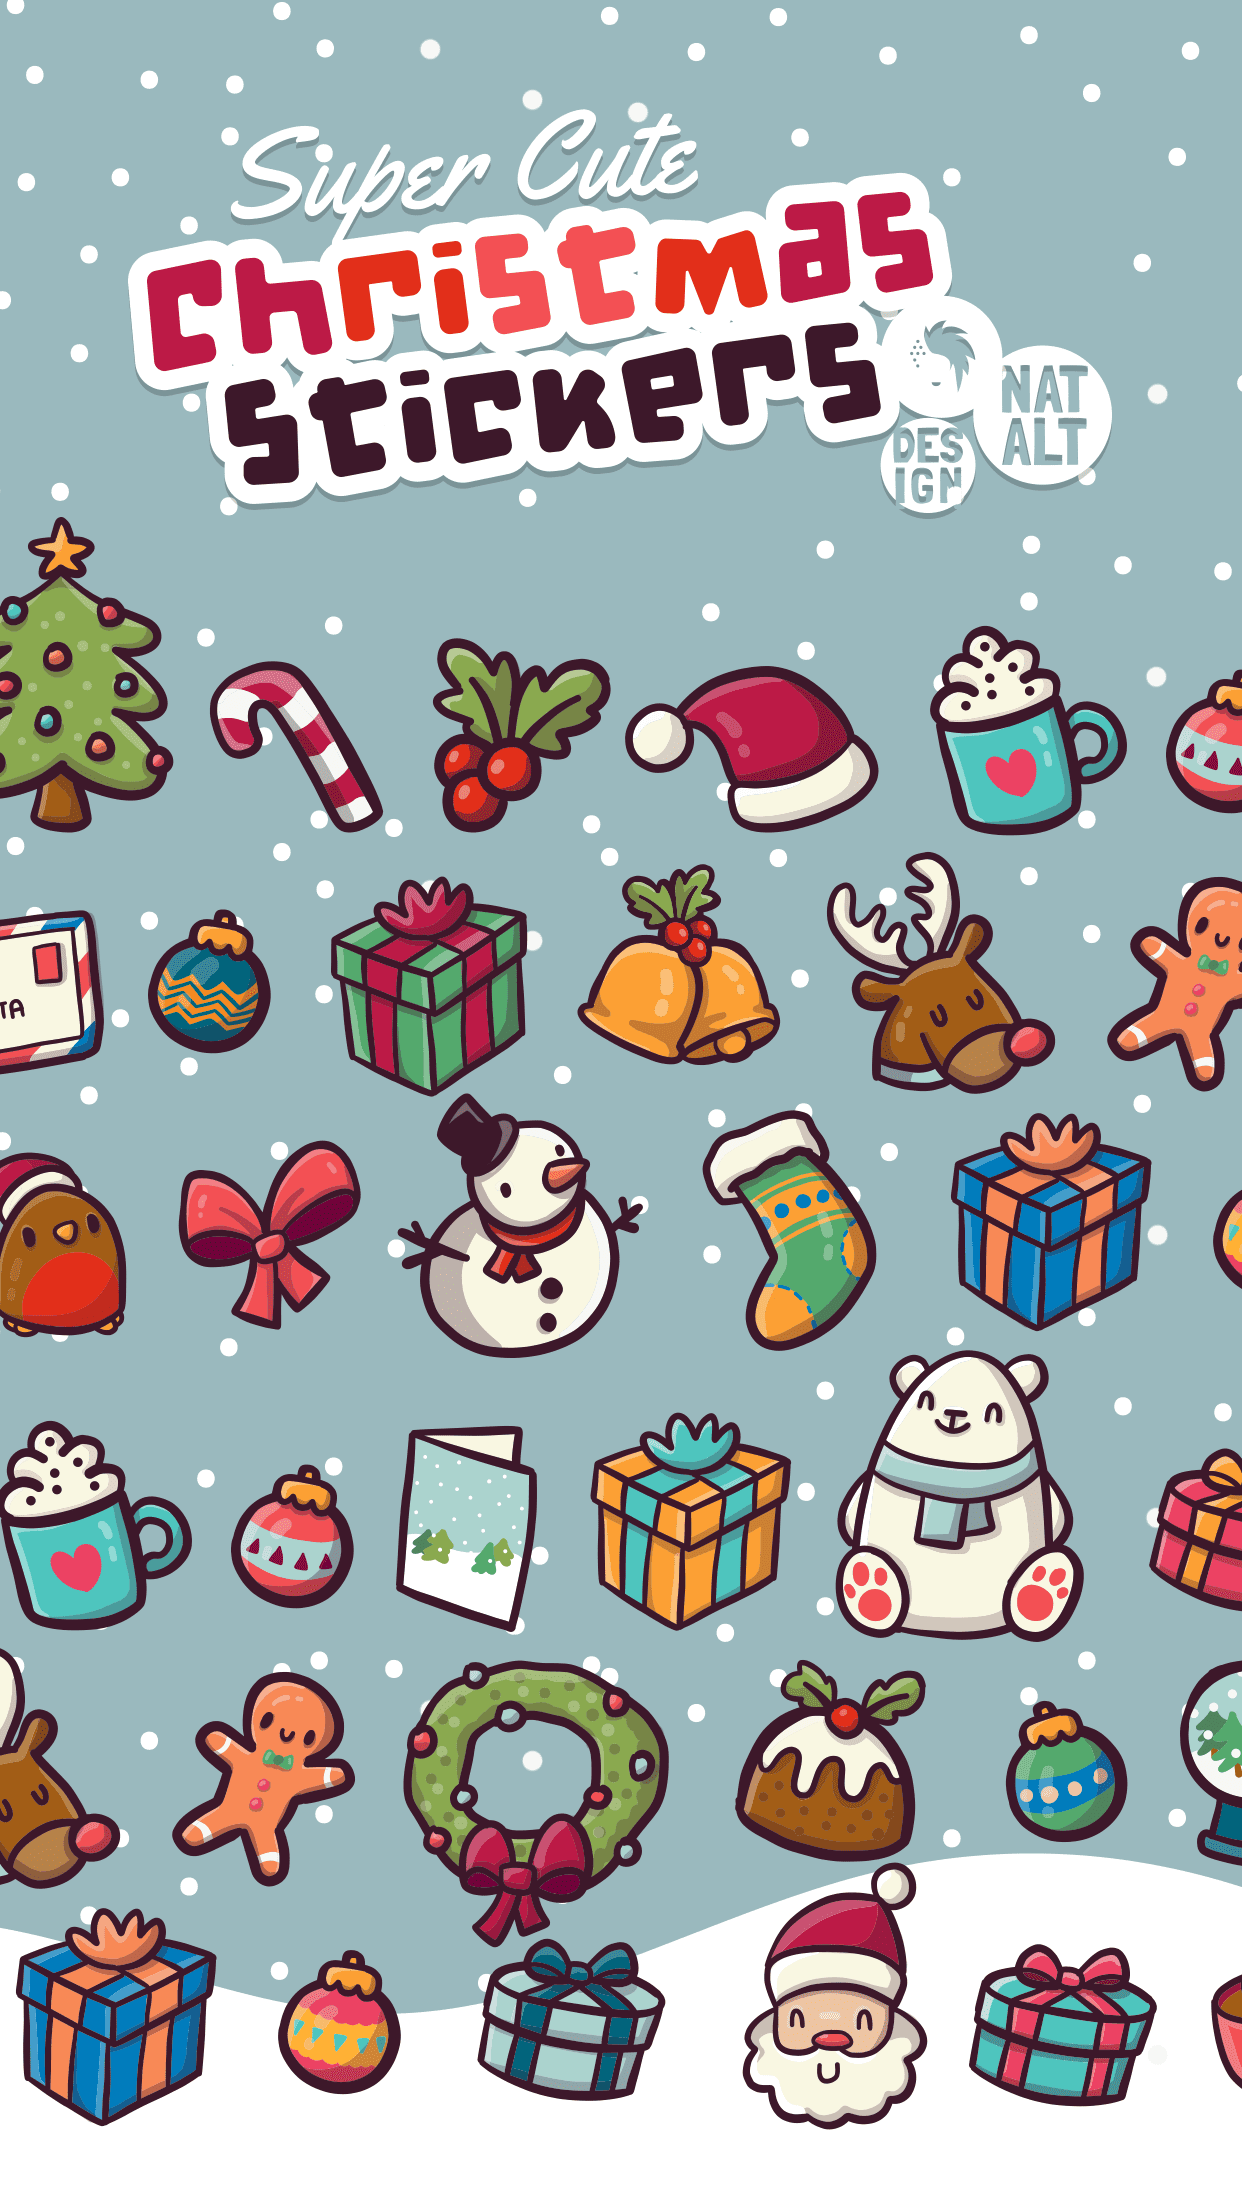 Cute Christmas Icons